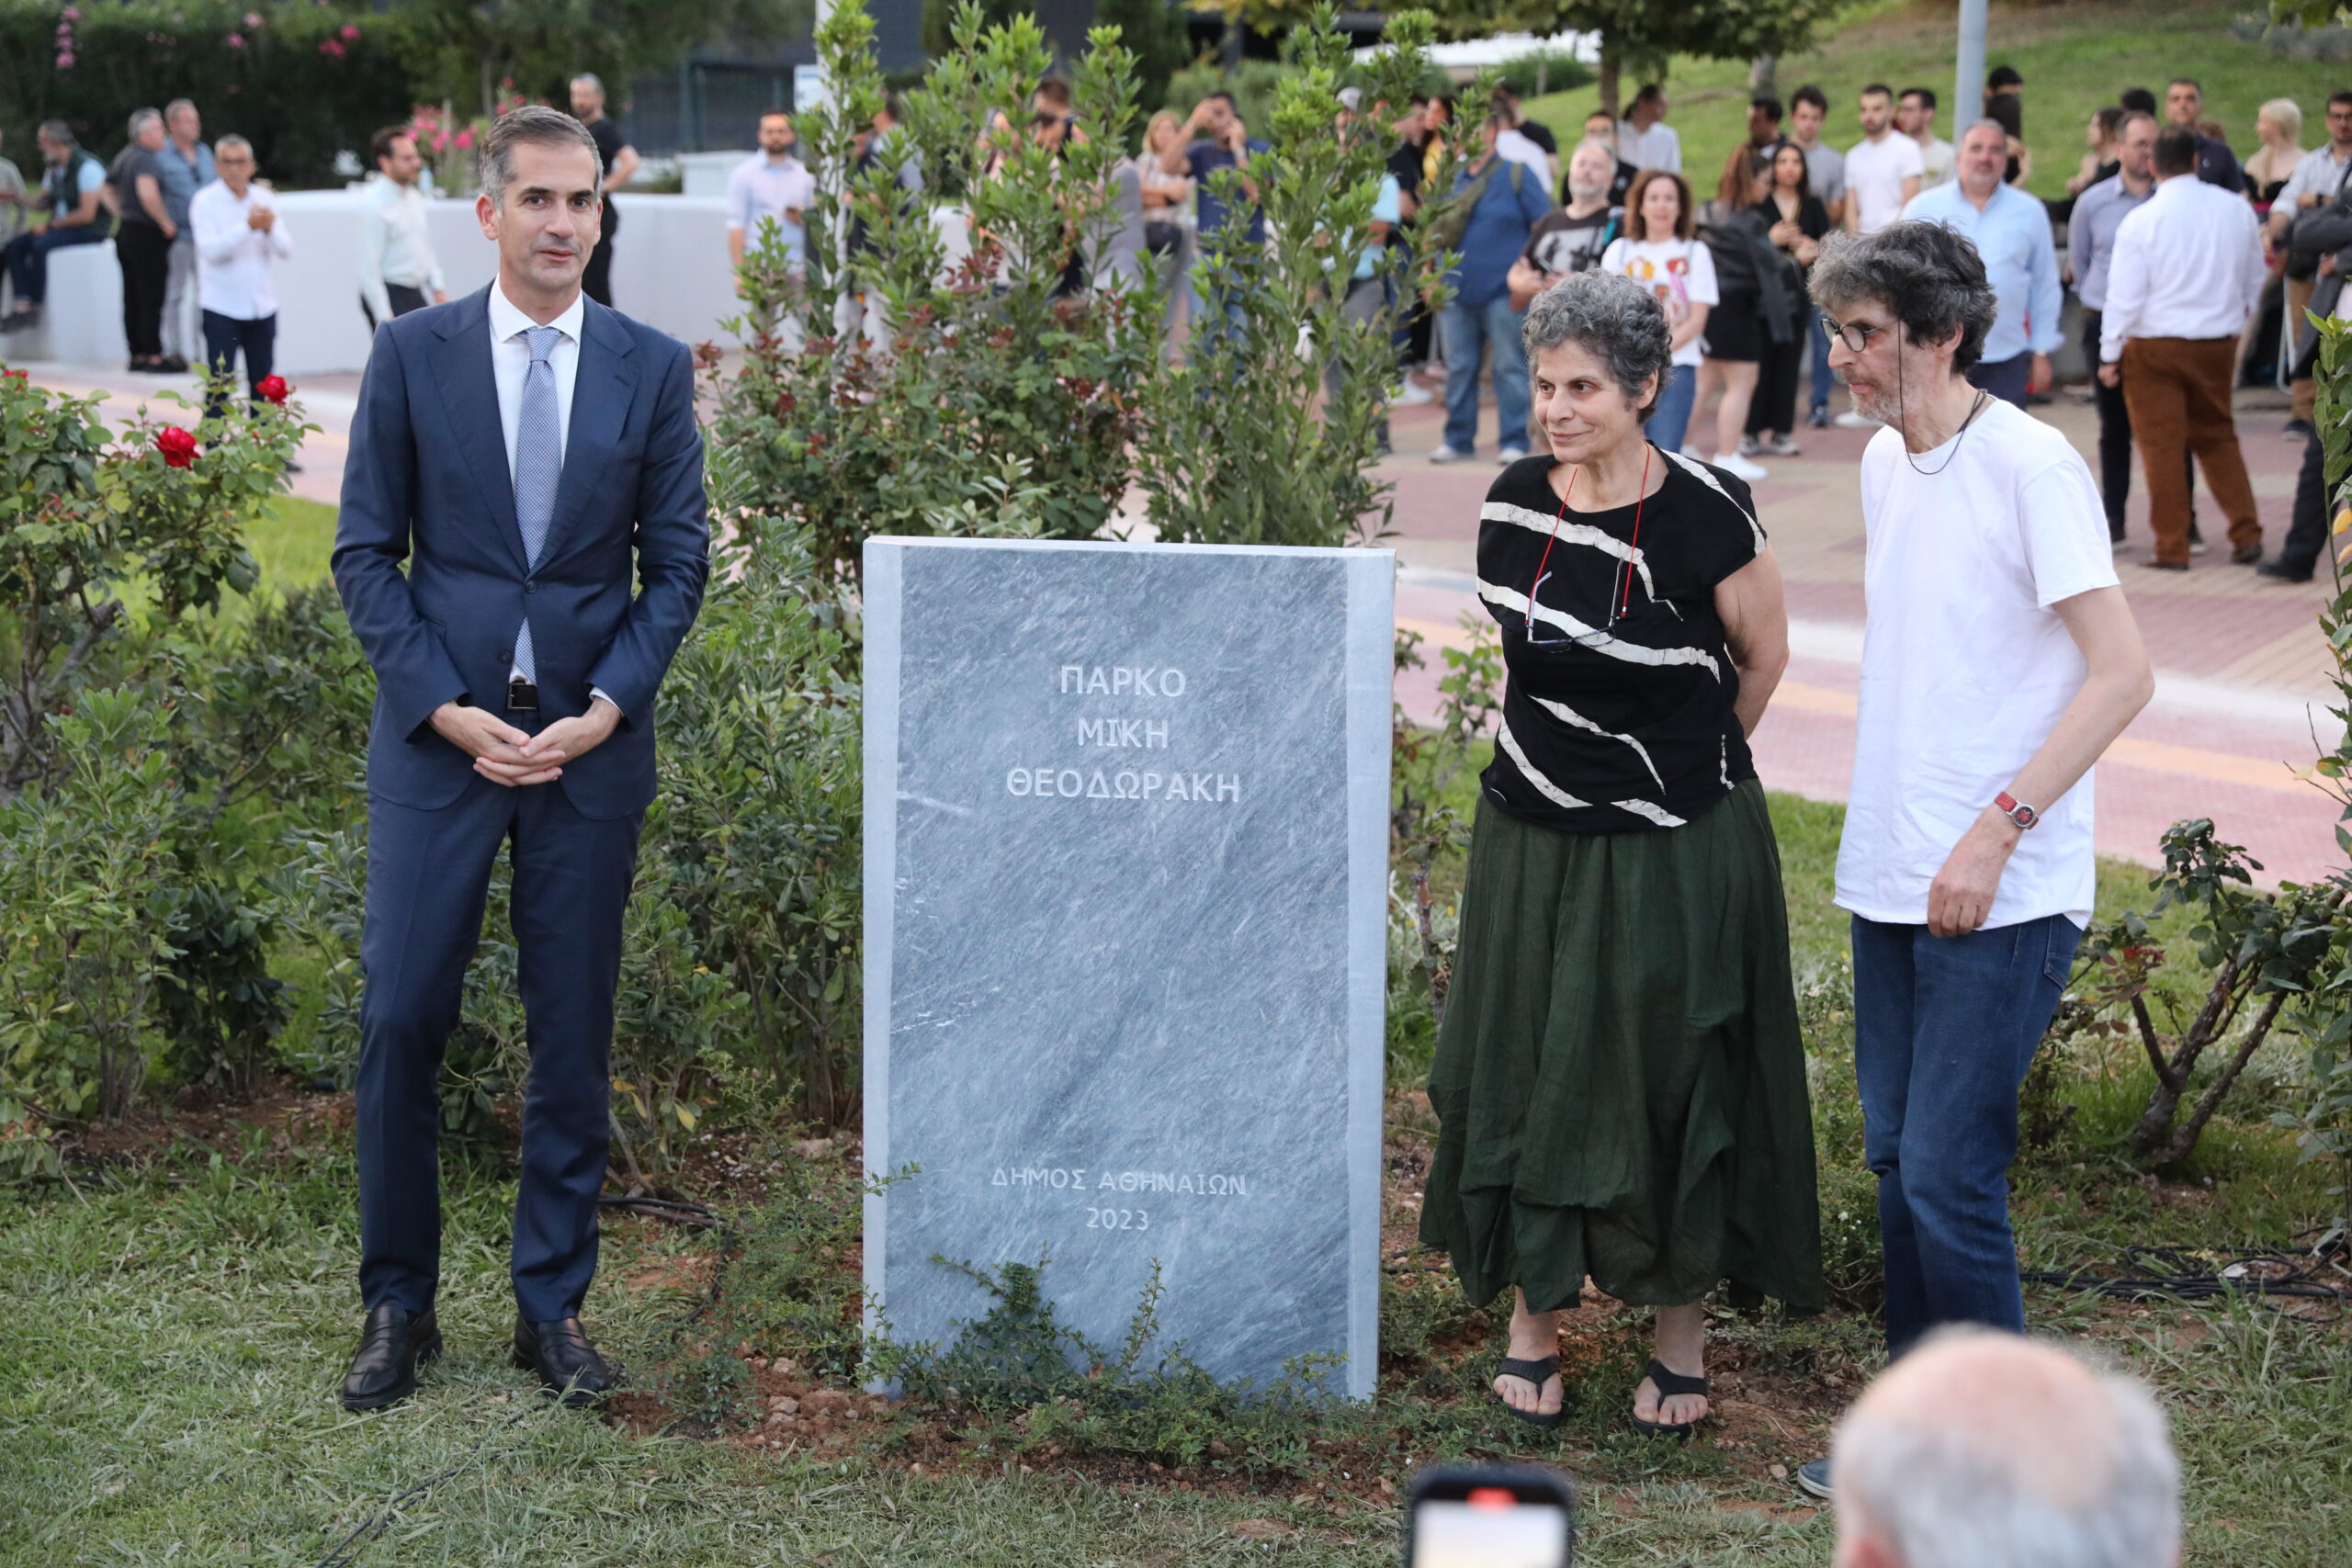 Η Αθήνα τίμησε τον Μίκη Θεοδωράκη - Πάρκο επί της Ιεράς Οδού και Πειραιώς φέρει από σήμερα το όνομά του